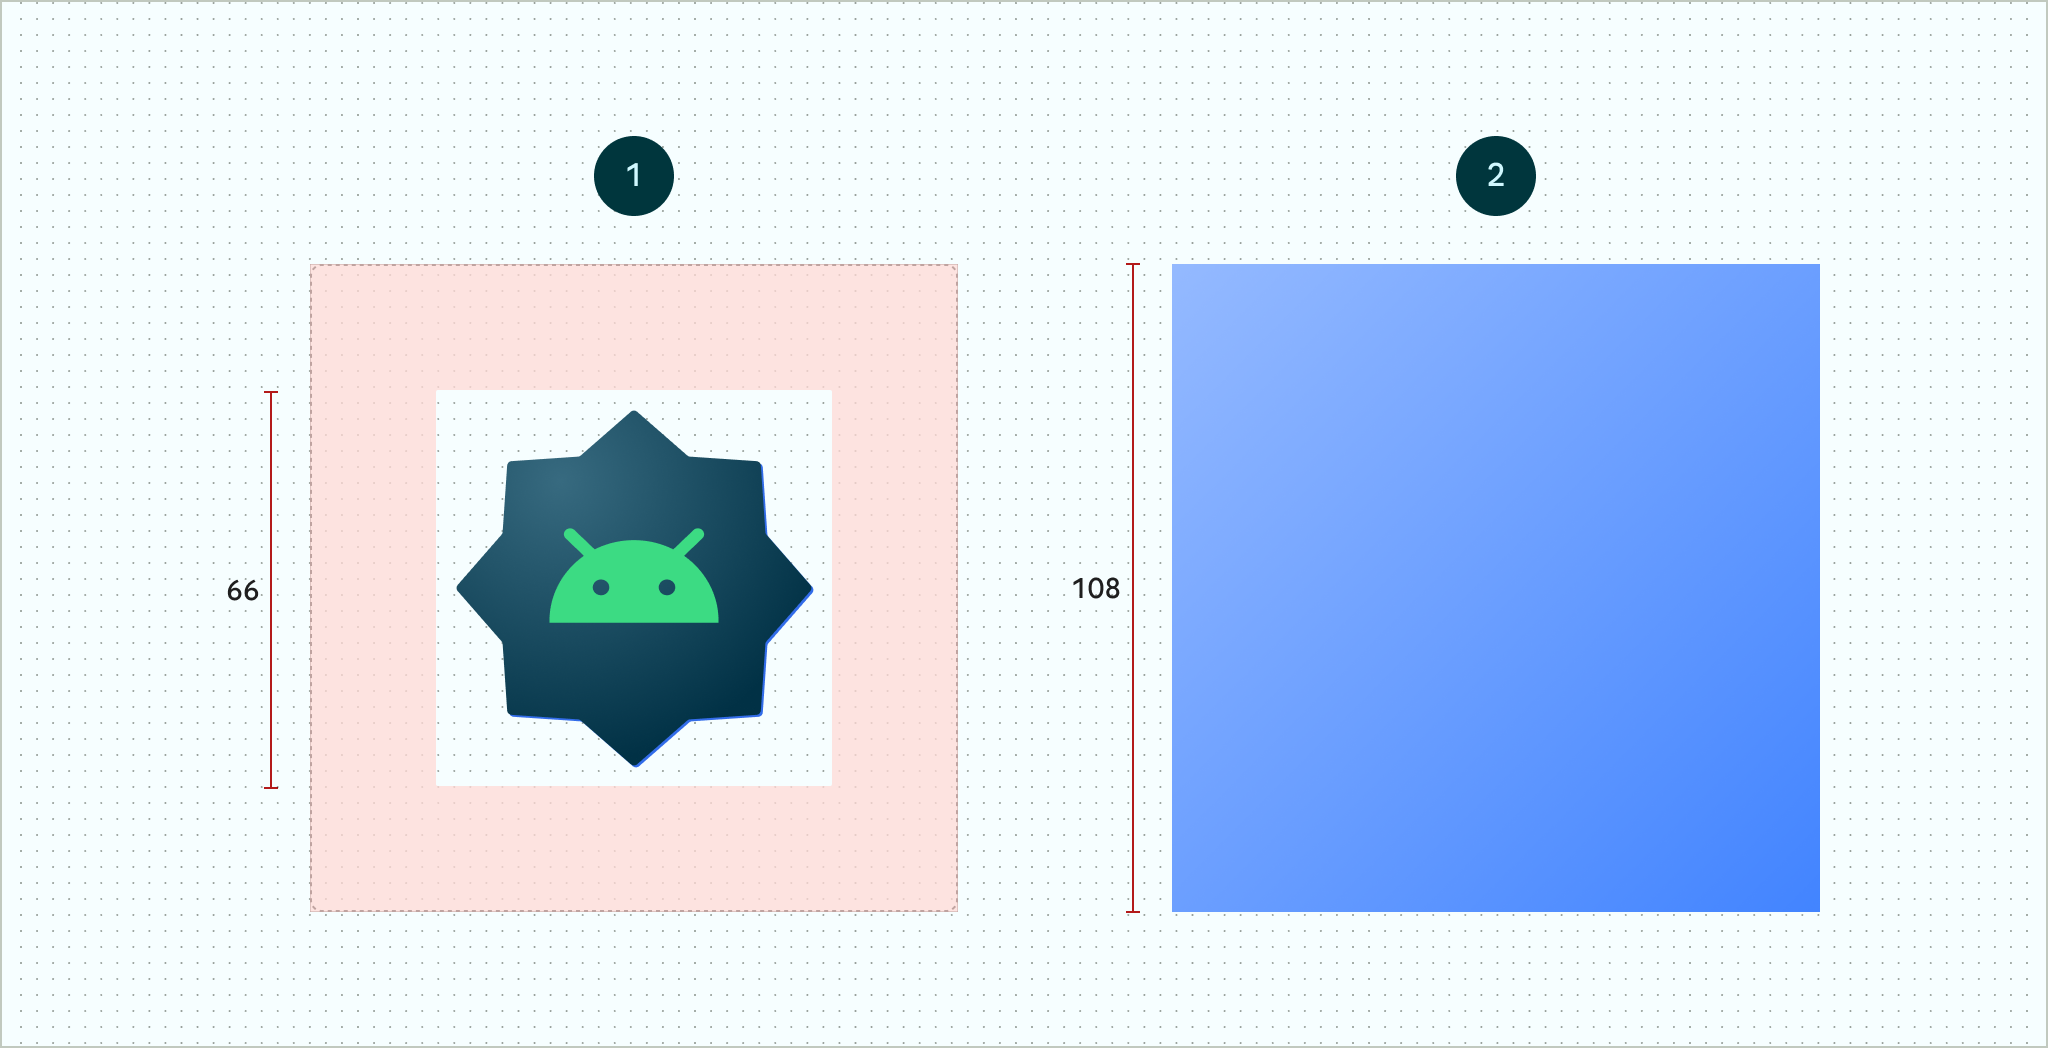 Hình ảnh cho thấy ví dụ về lớp nền trước (hình ảnh bên trái) và lớp nền (hình ảnh bên phải). Nền trước cho thấy biểu tượng 16 mặt của một biểu trưng Android mẫu nằm ở giữa vùng an toàn có kích thước 66x66. Vùng an toàn nằm ở giữa bên trong một vùng chứa có kích thước 108x108. Nền hiển thị các kích thước được đo lường giống nhau cho vùng an toàn và vùng chứa, nhưng chỉ là nền màu xanh dương và không có biểu trưng.